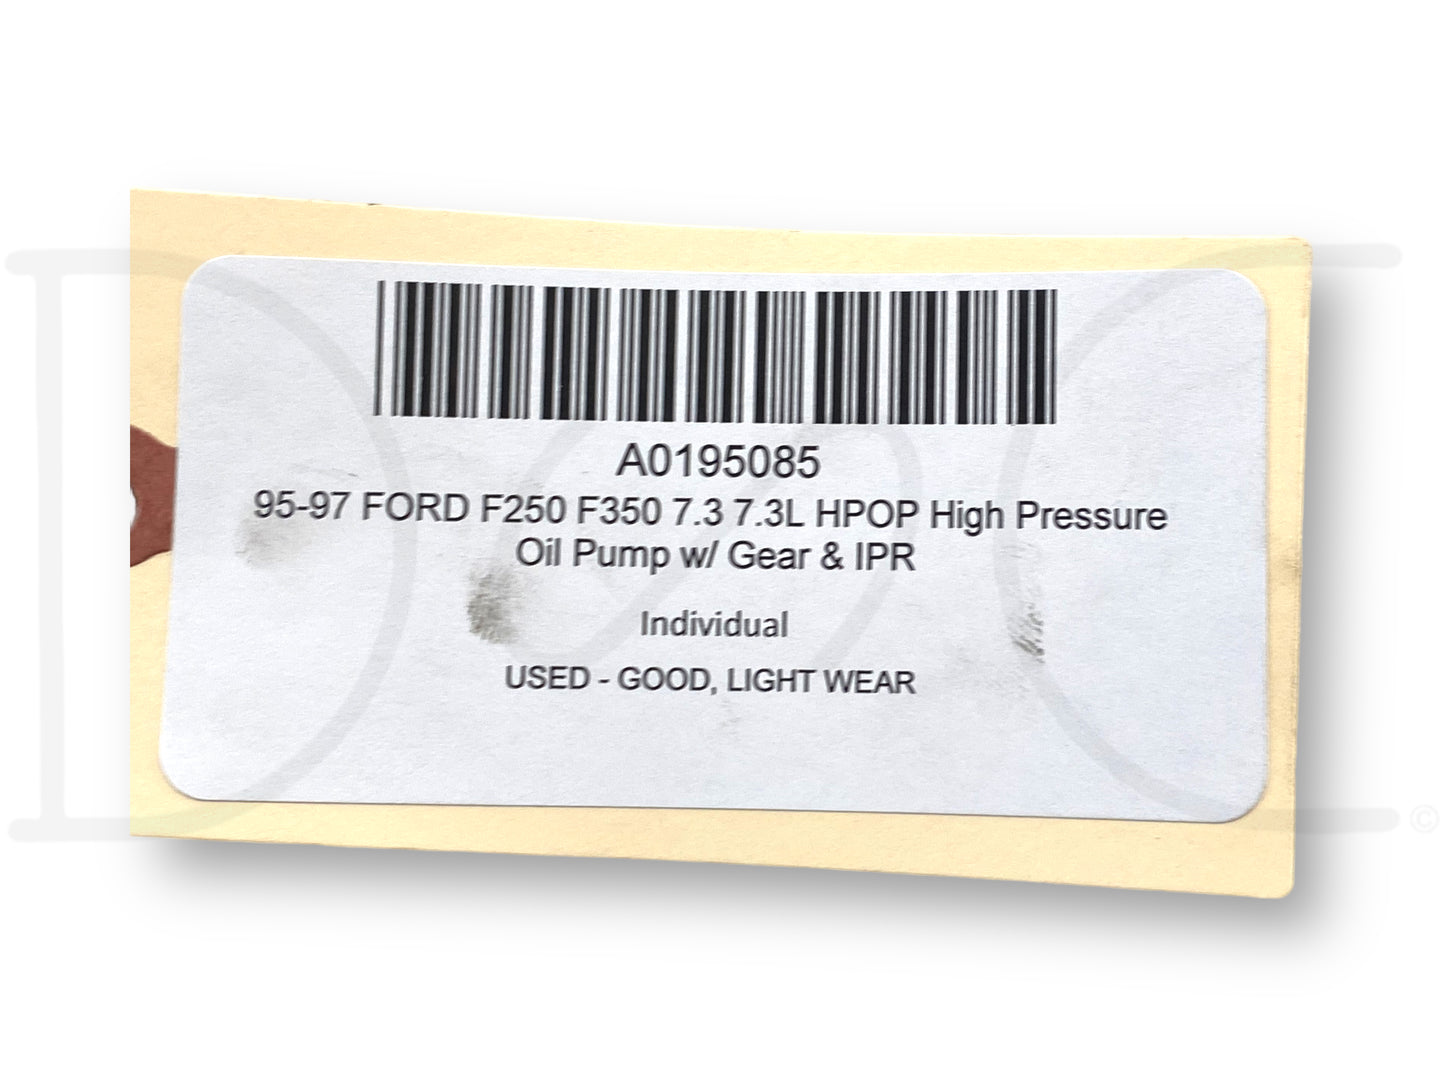 95-97 Ford F250 F350 7.3 7.3L HPOP High Pressure Oil Pump W/ Gear & IPR